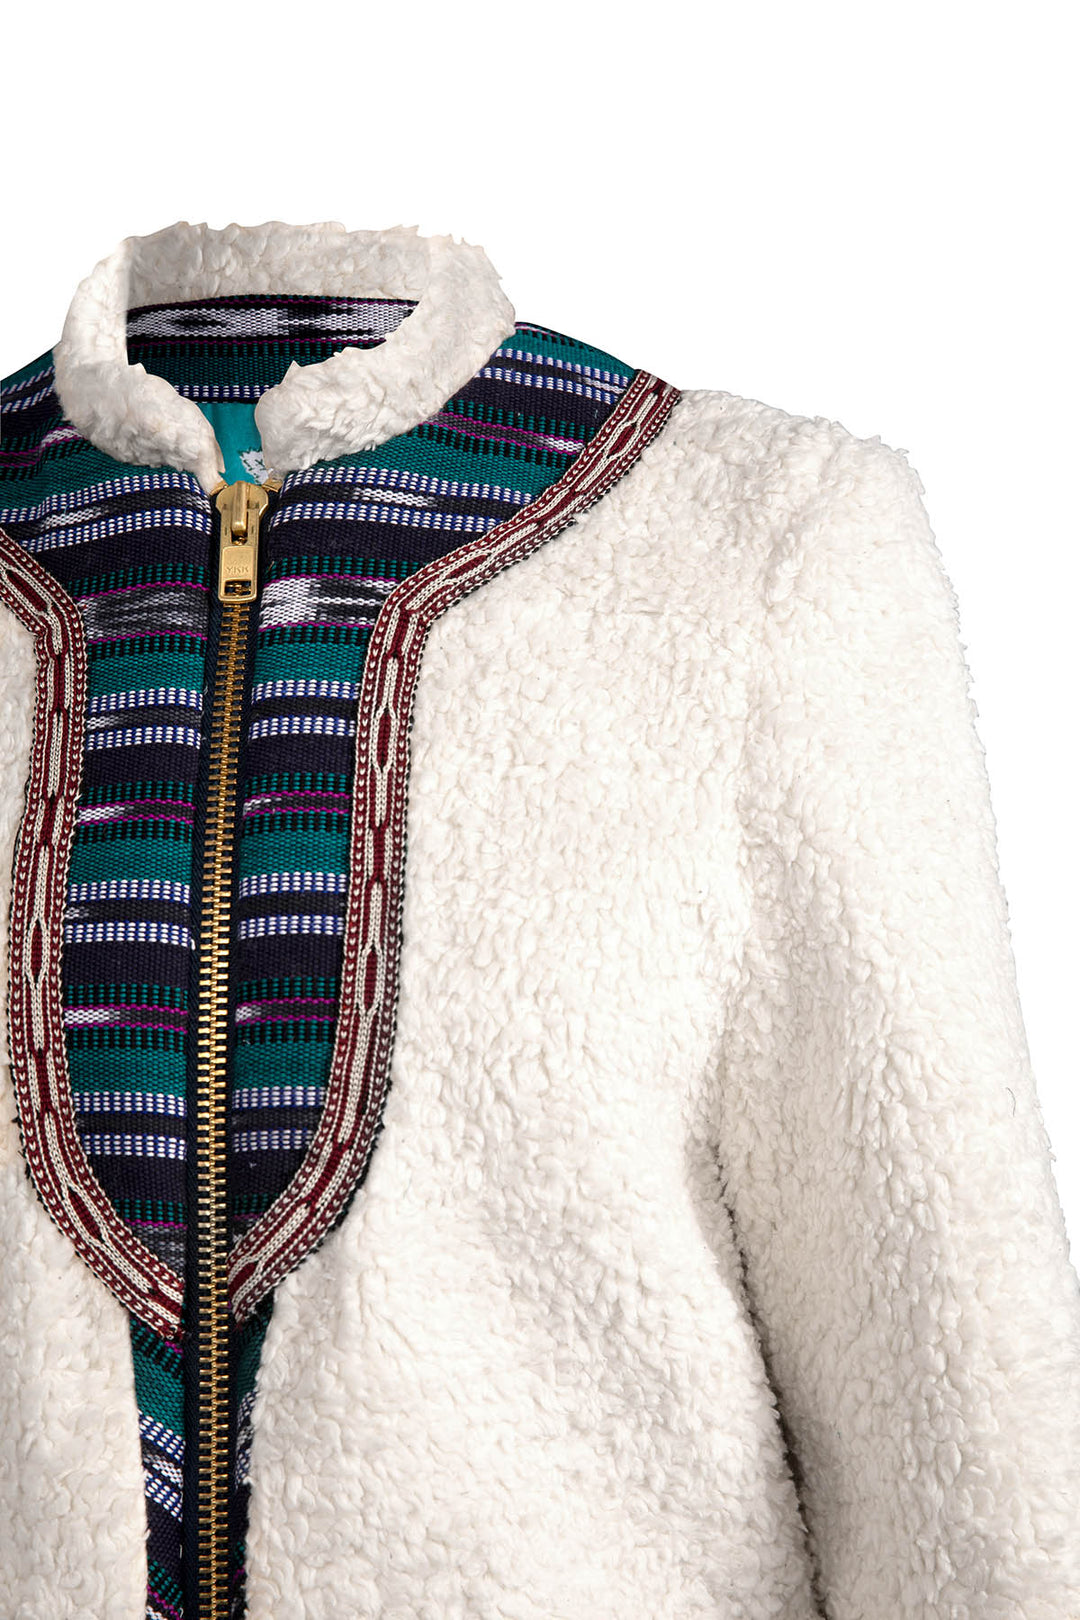 Saami Fleece Jacket